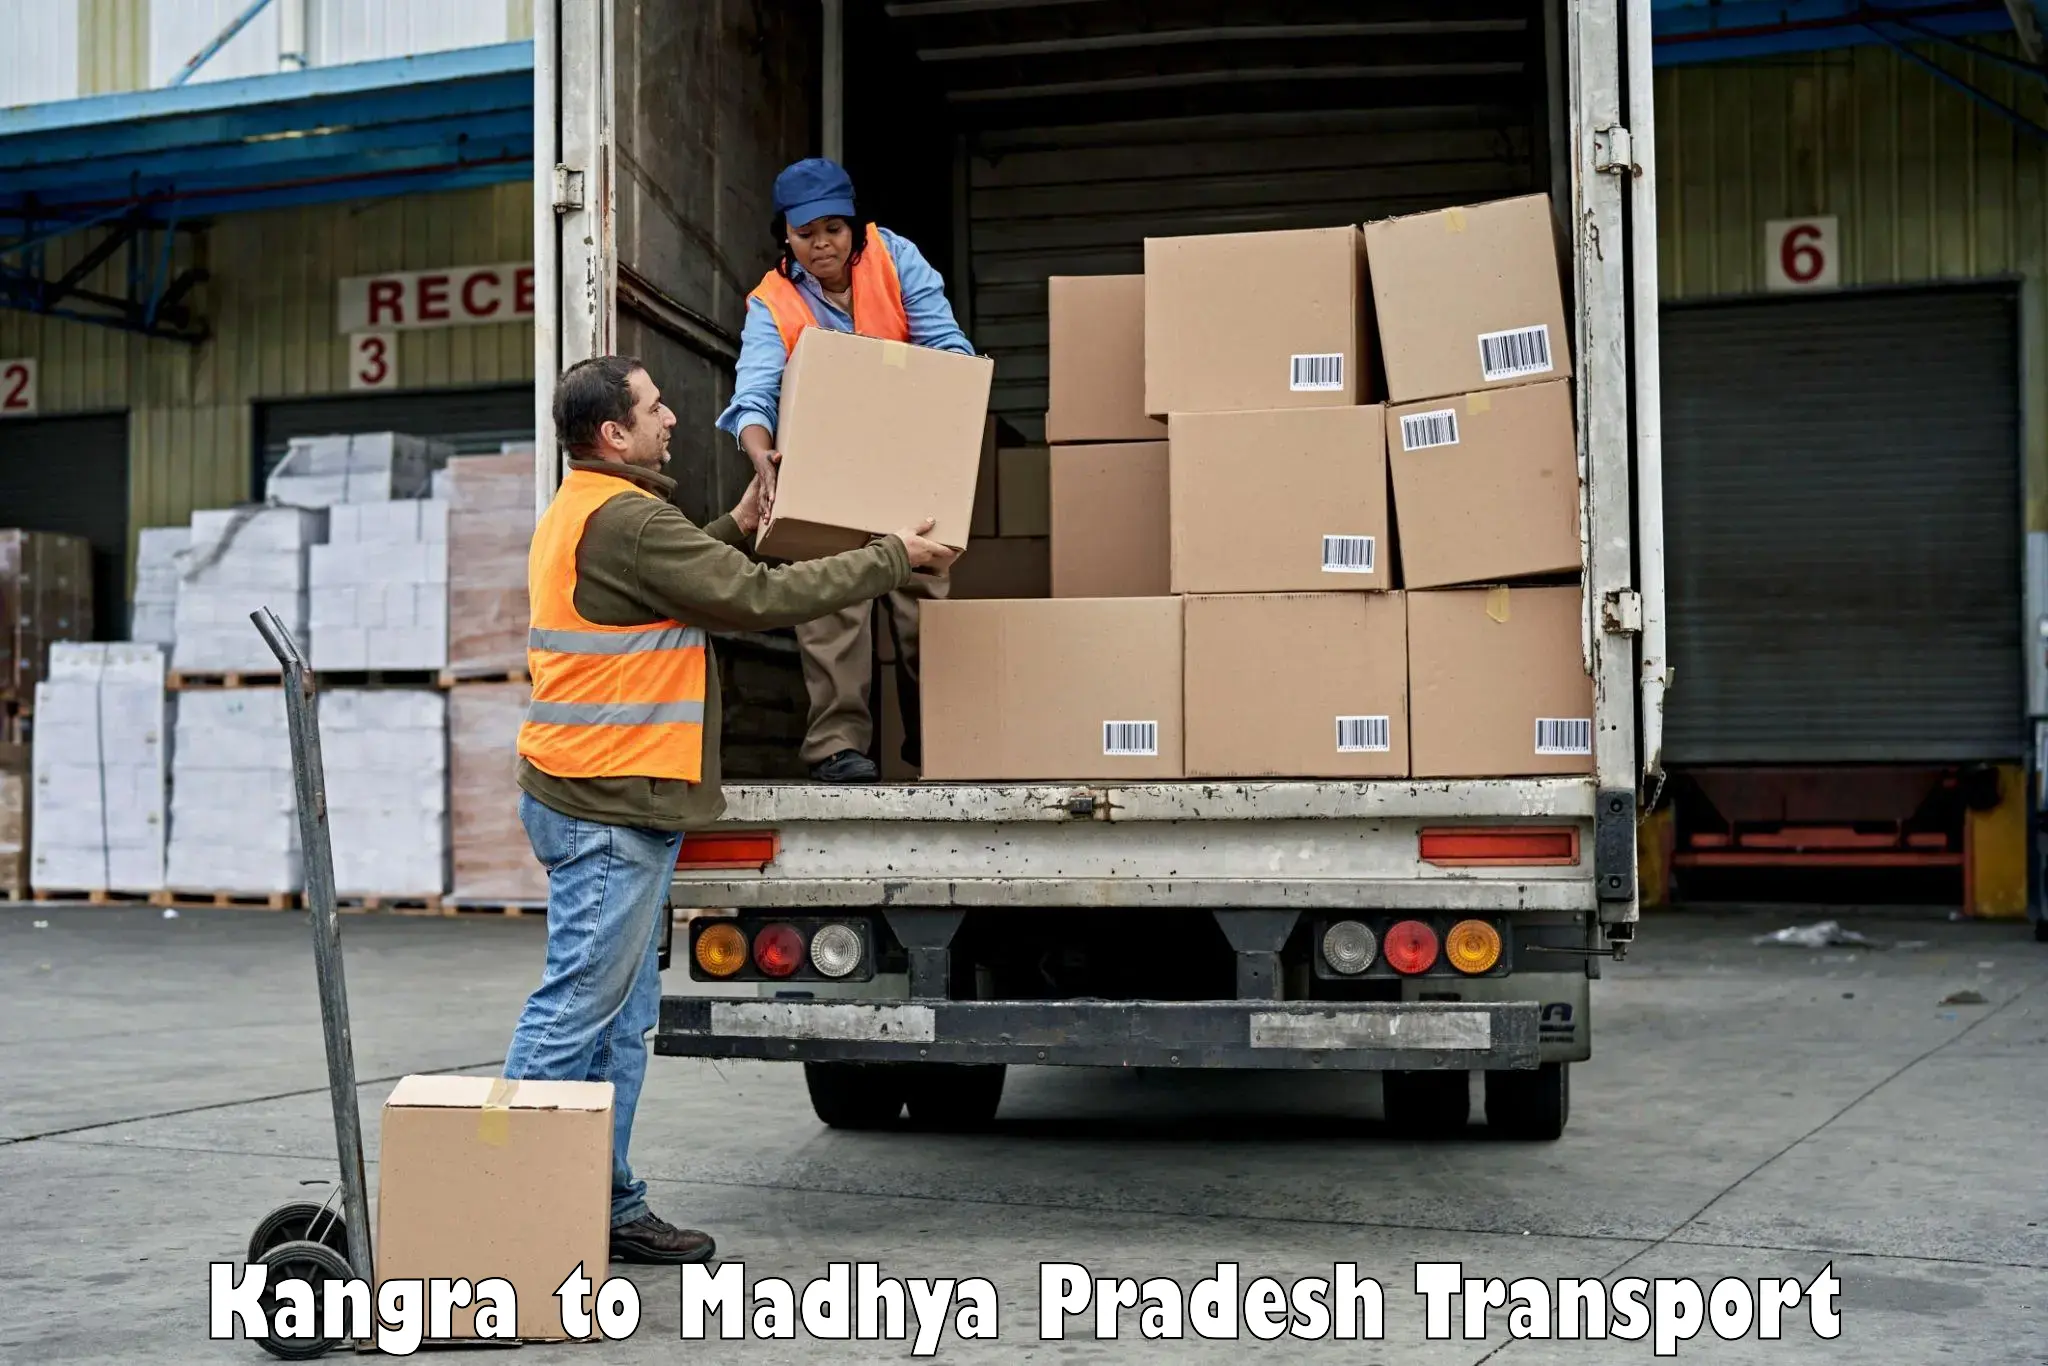 Pick up transport service Kangra to Depalpur